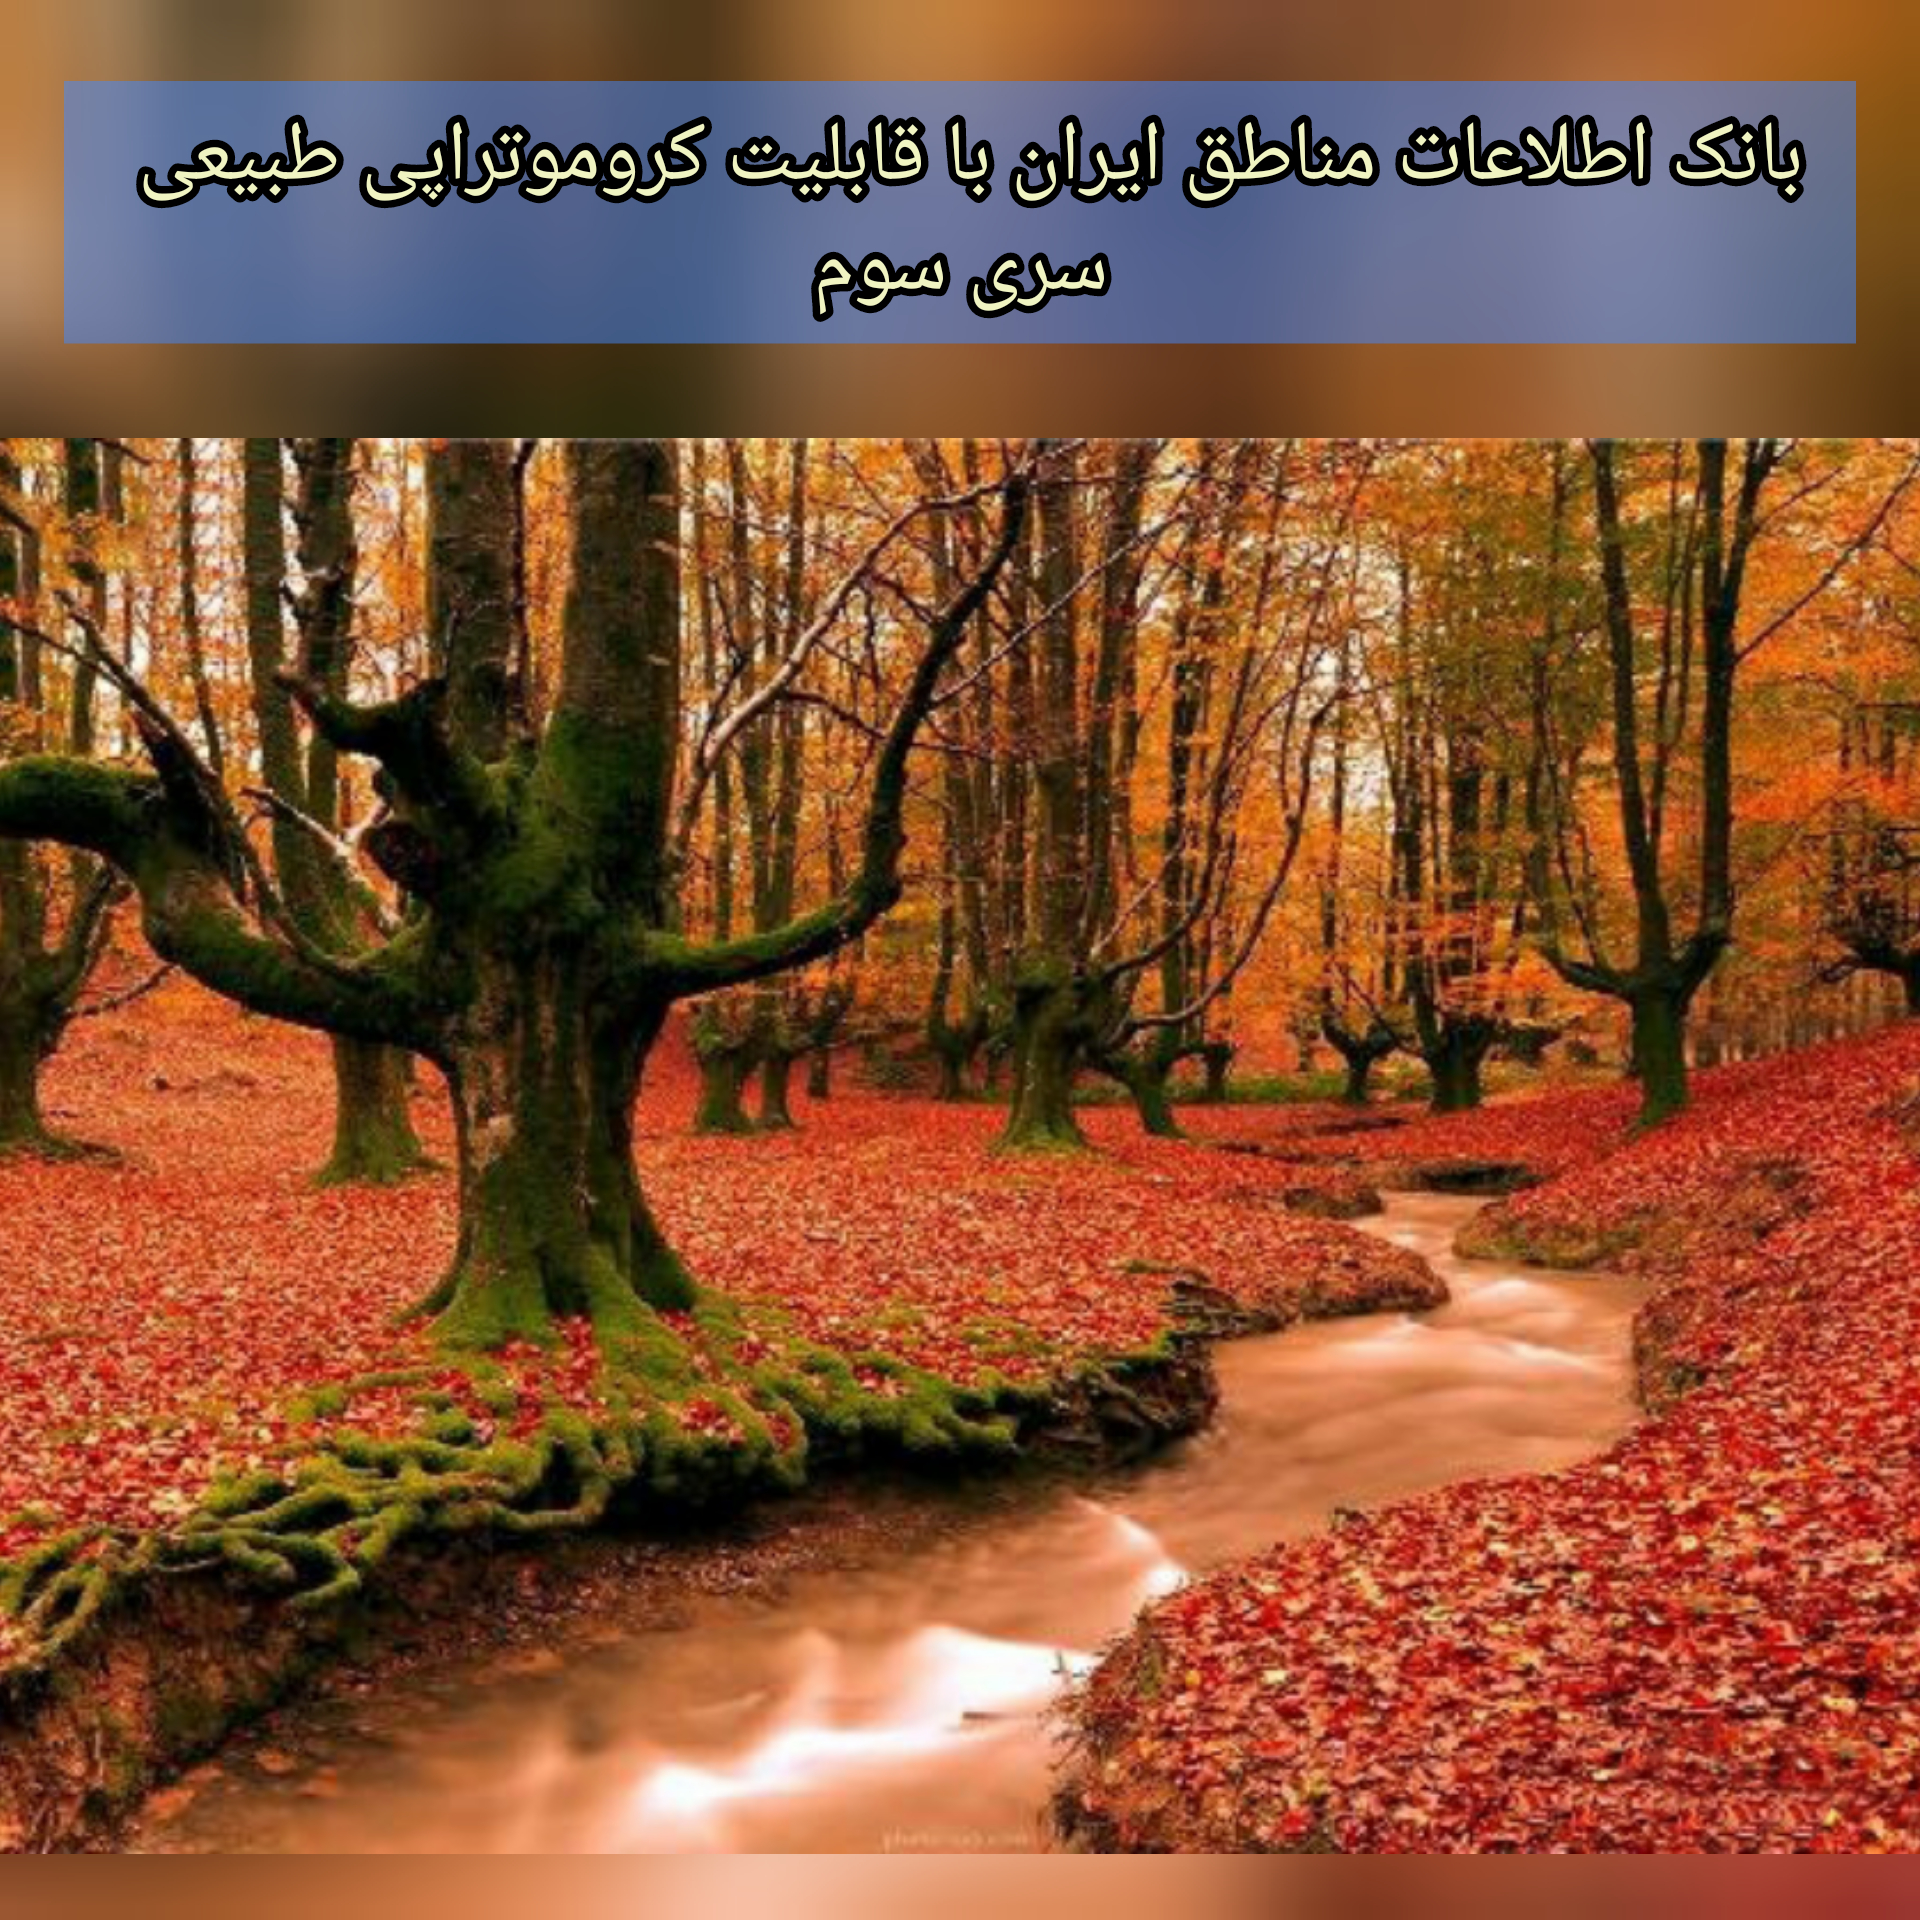 بانک اطلاعات مناطق ایران با قابلیت کروموتراپی طبیعی (3)